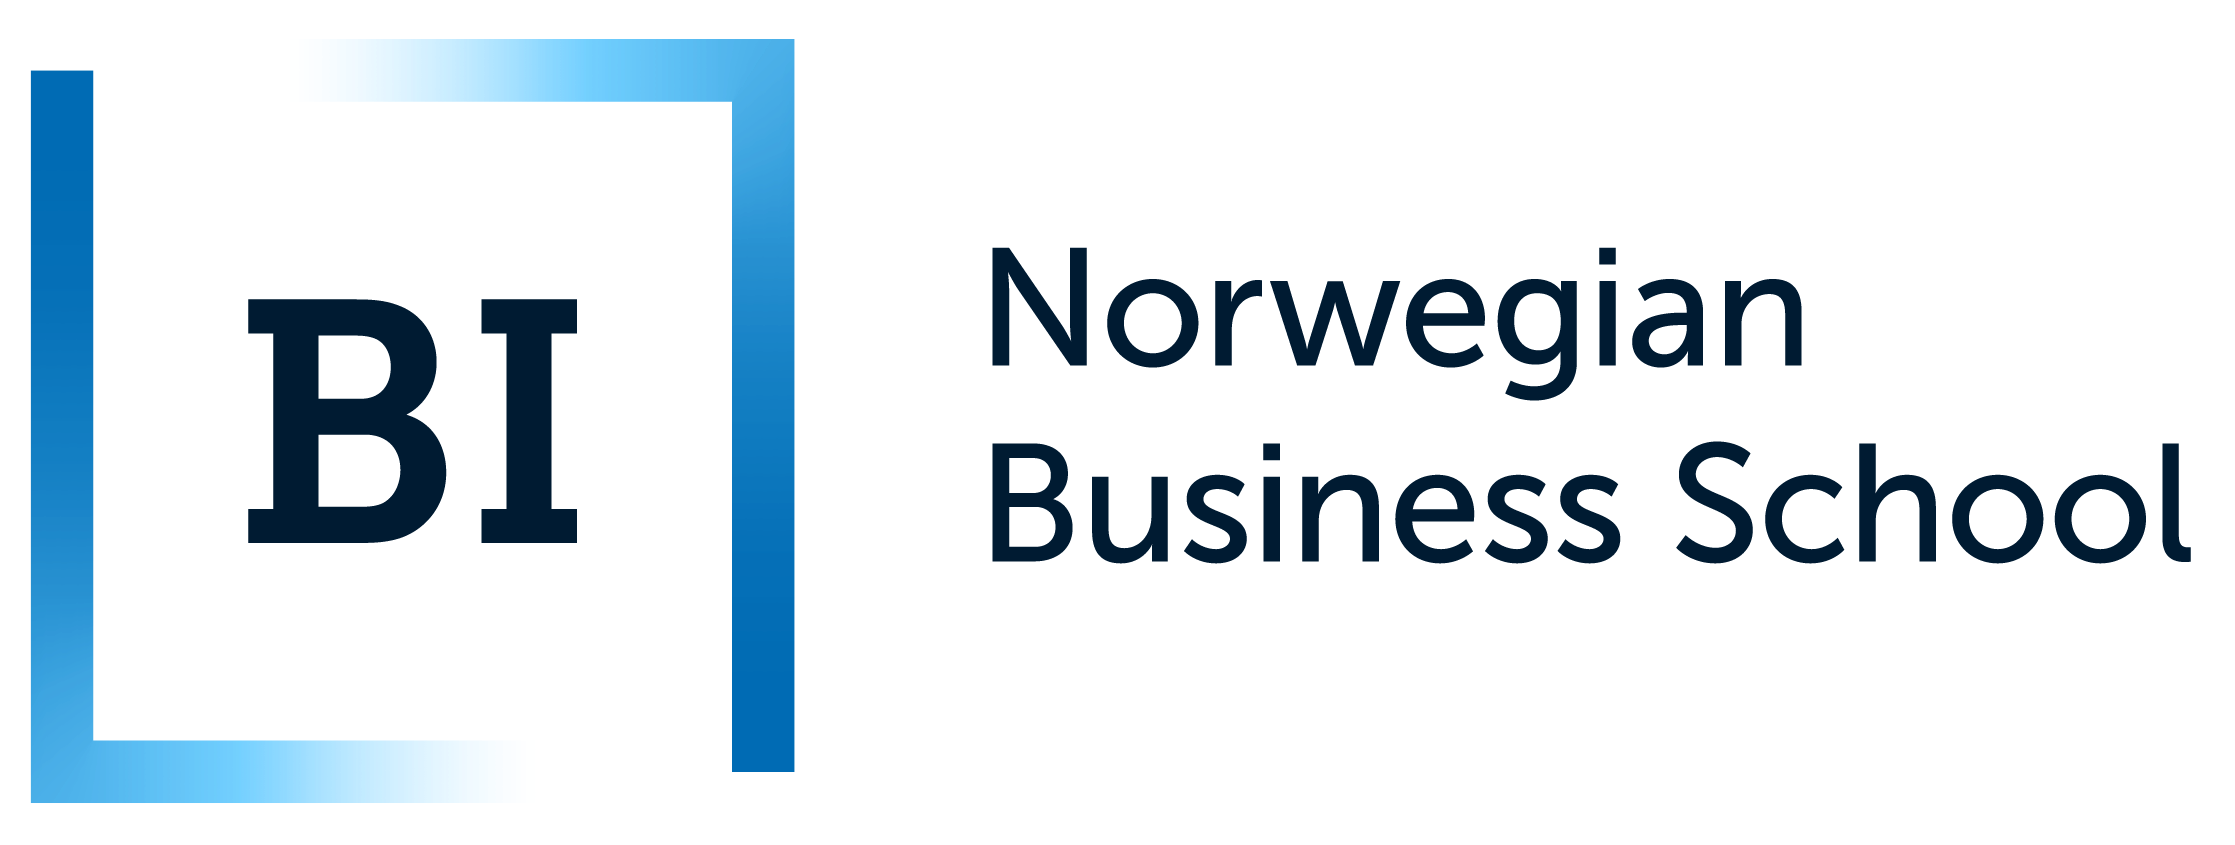 Norwegian Business School